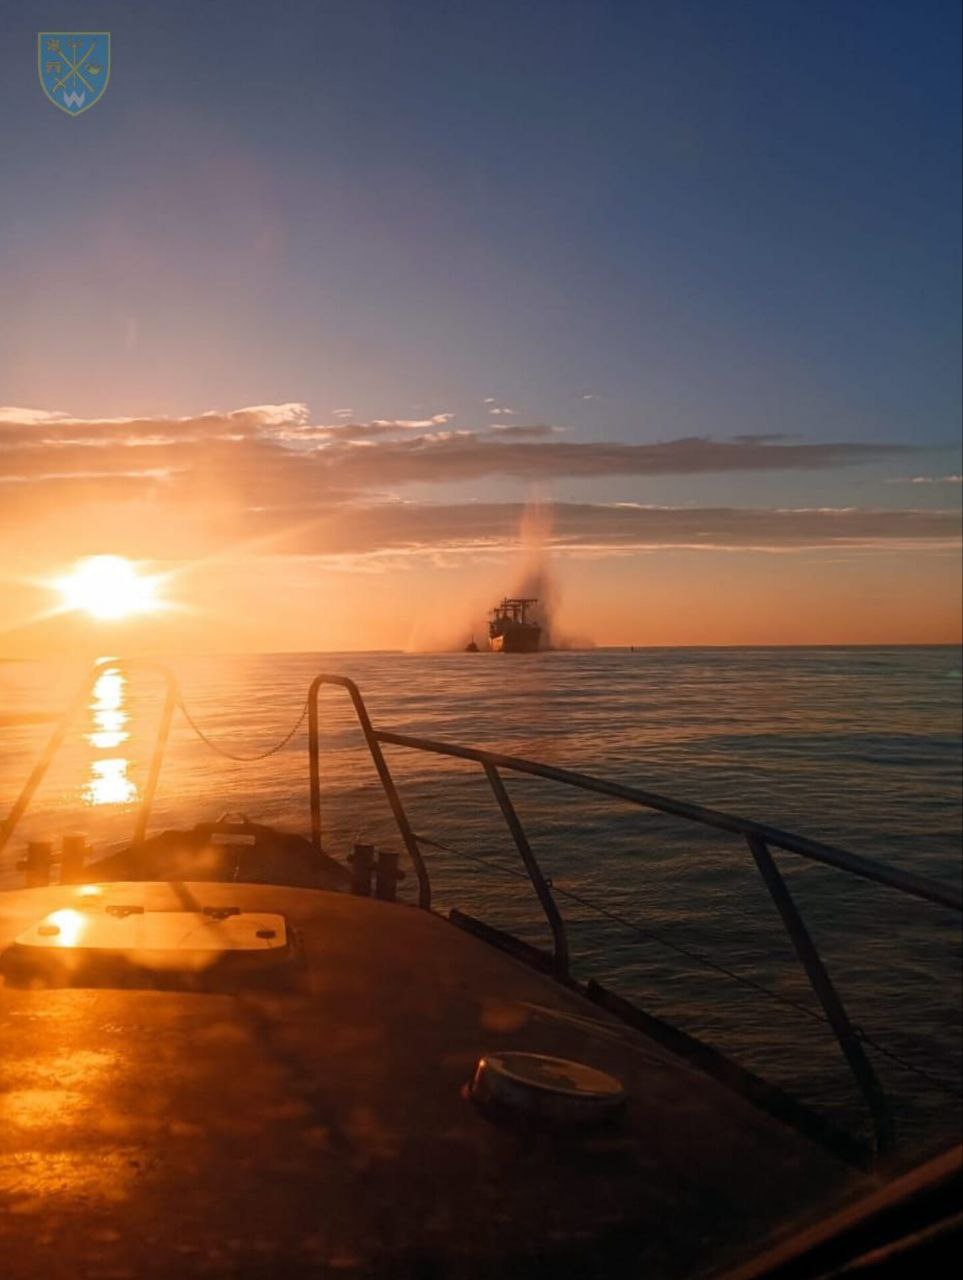 В Черном море на российской мине подорвался балкер под флагом Панамы: фото — фото